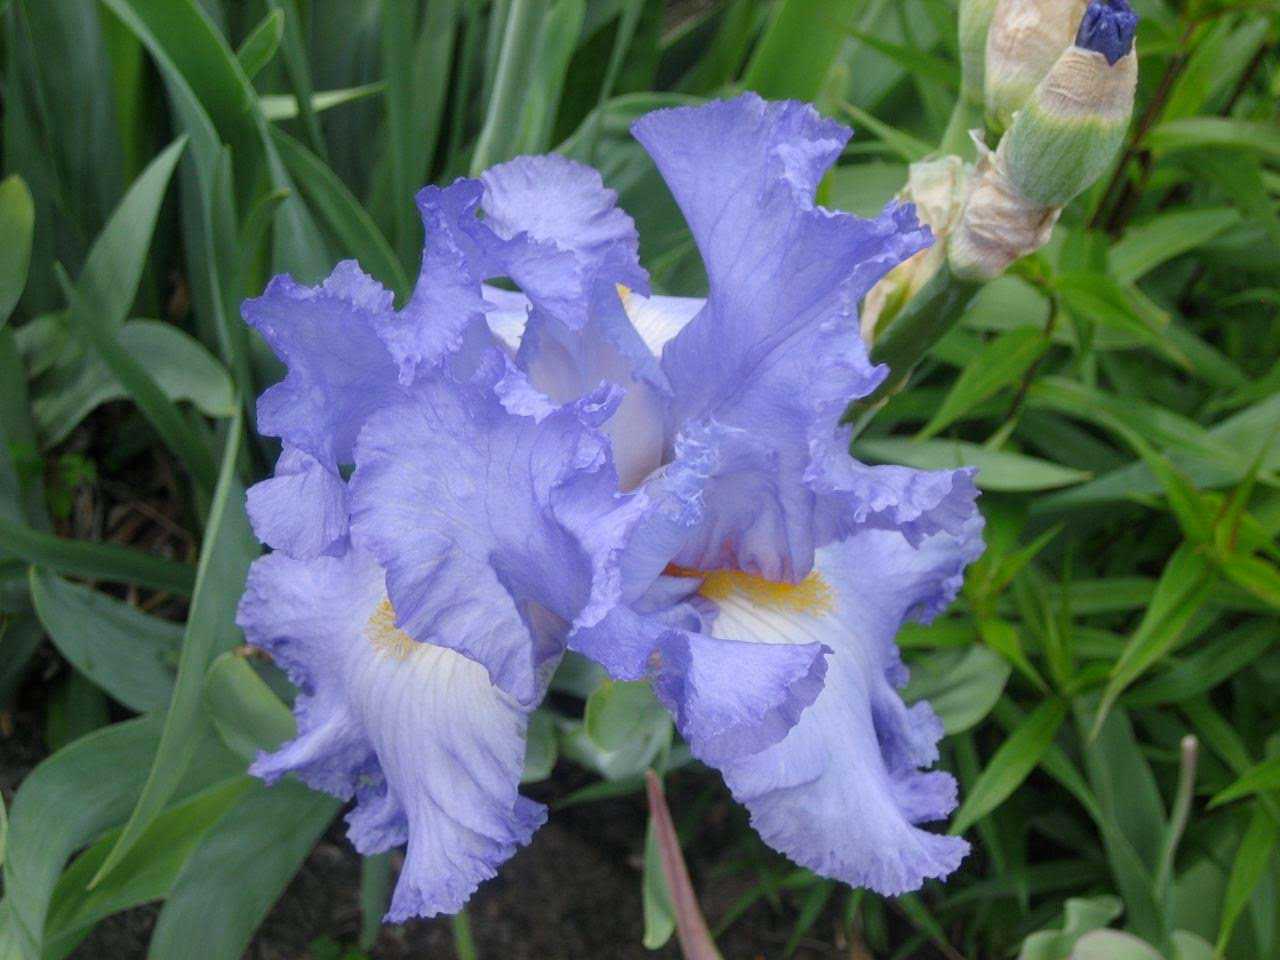 Blue flowering perennials